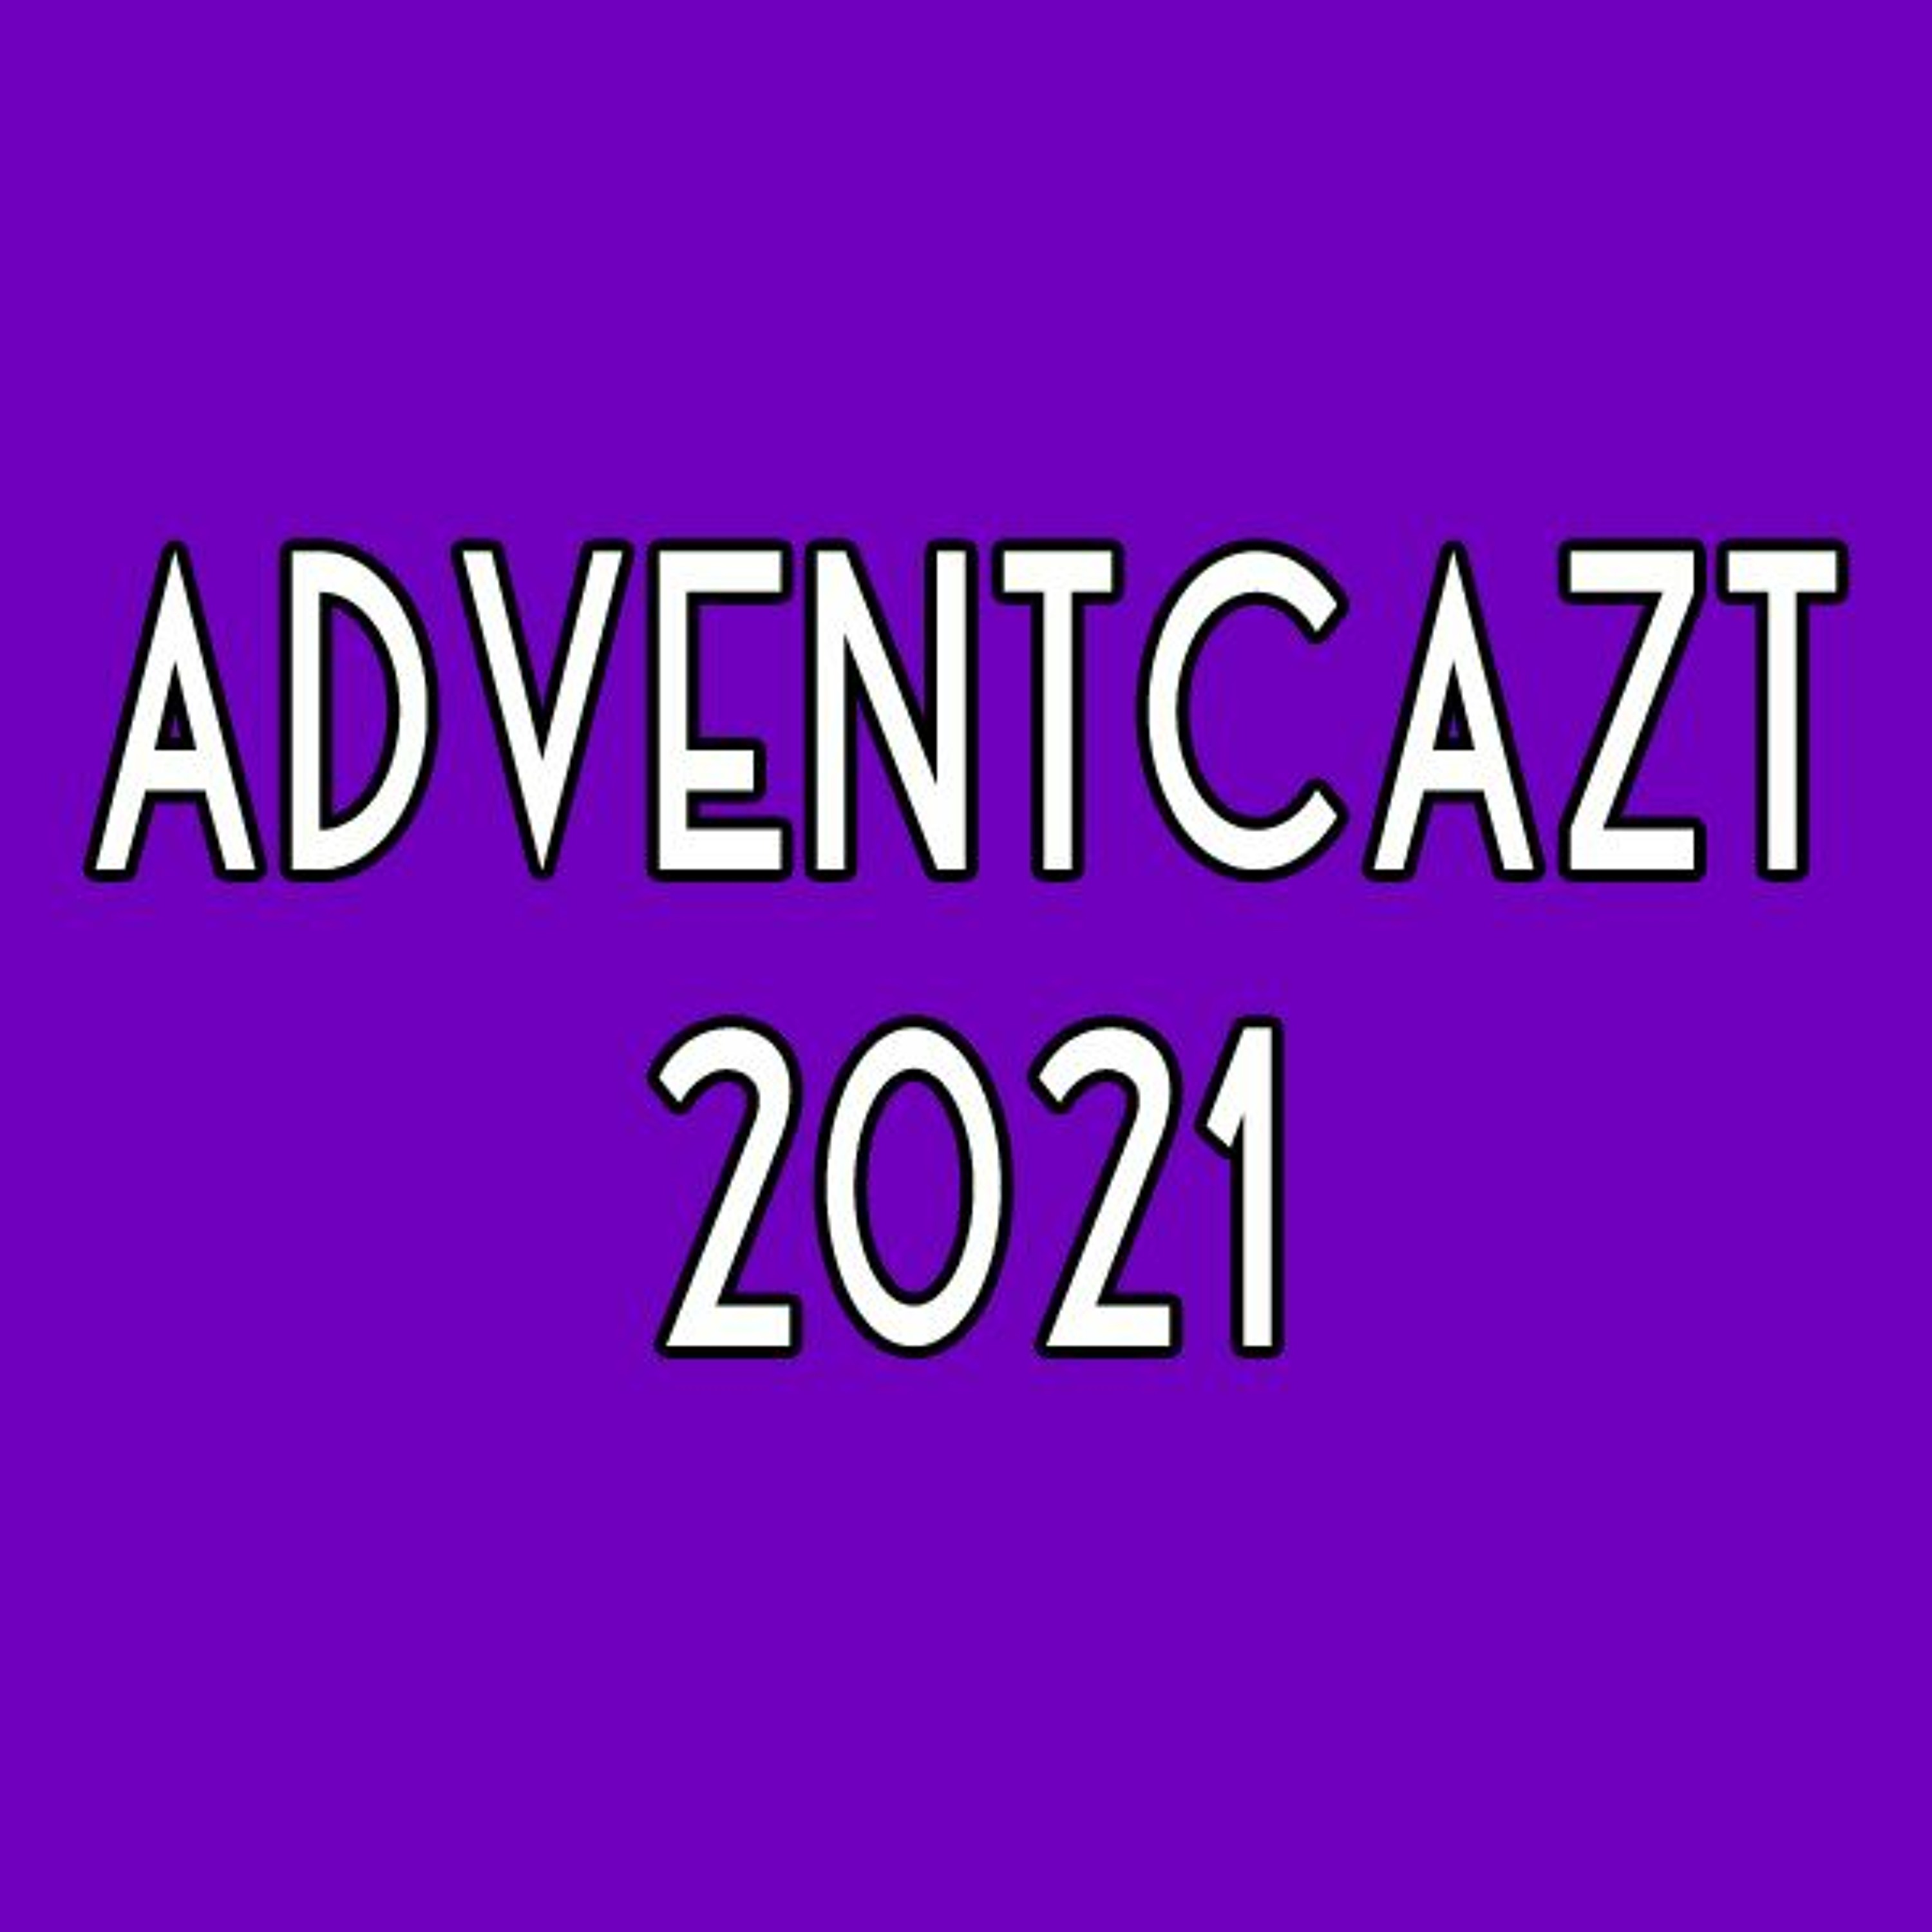 ADVENTCAzT 2021: 06 - Friday 1st Week of Advent